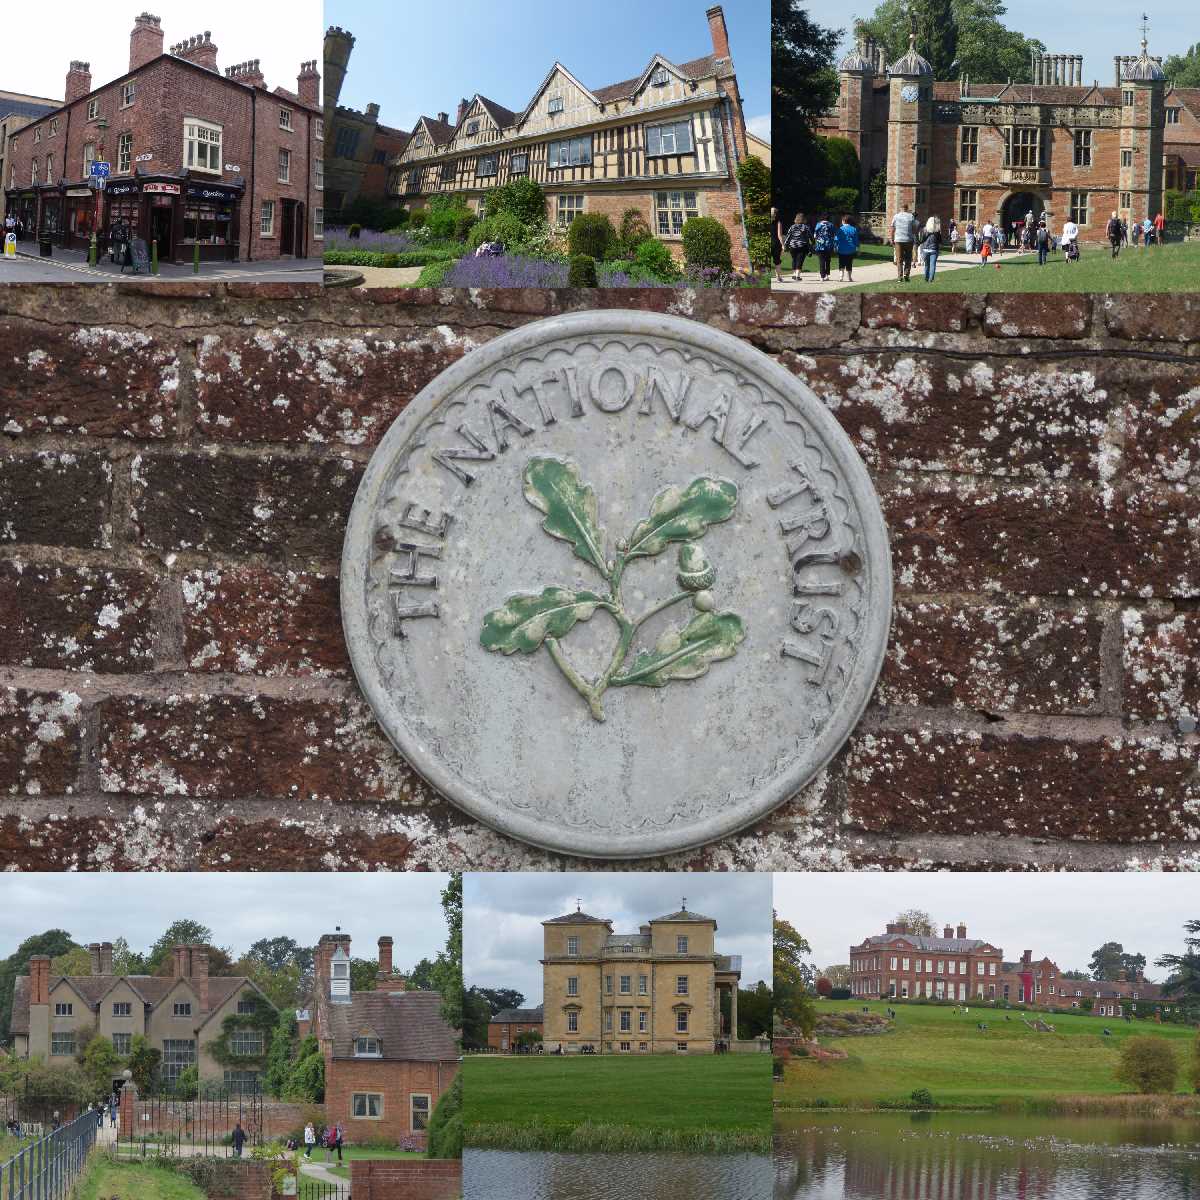 National Trust properties around the West Midlands region